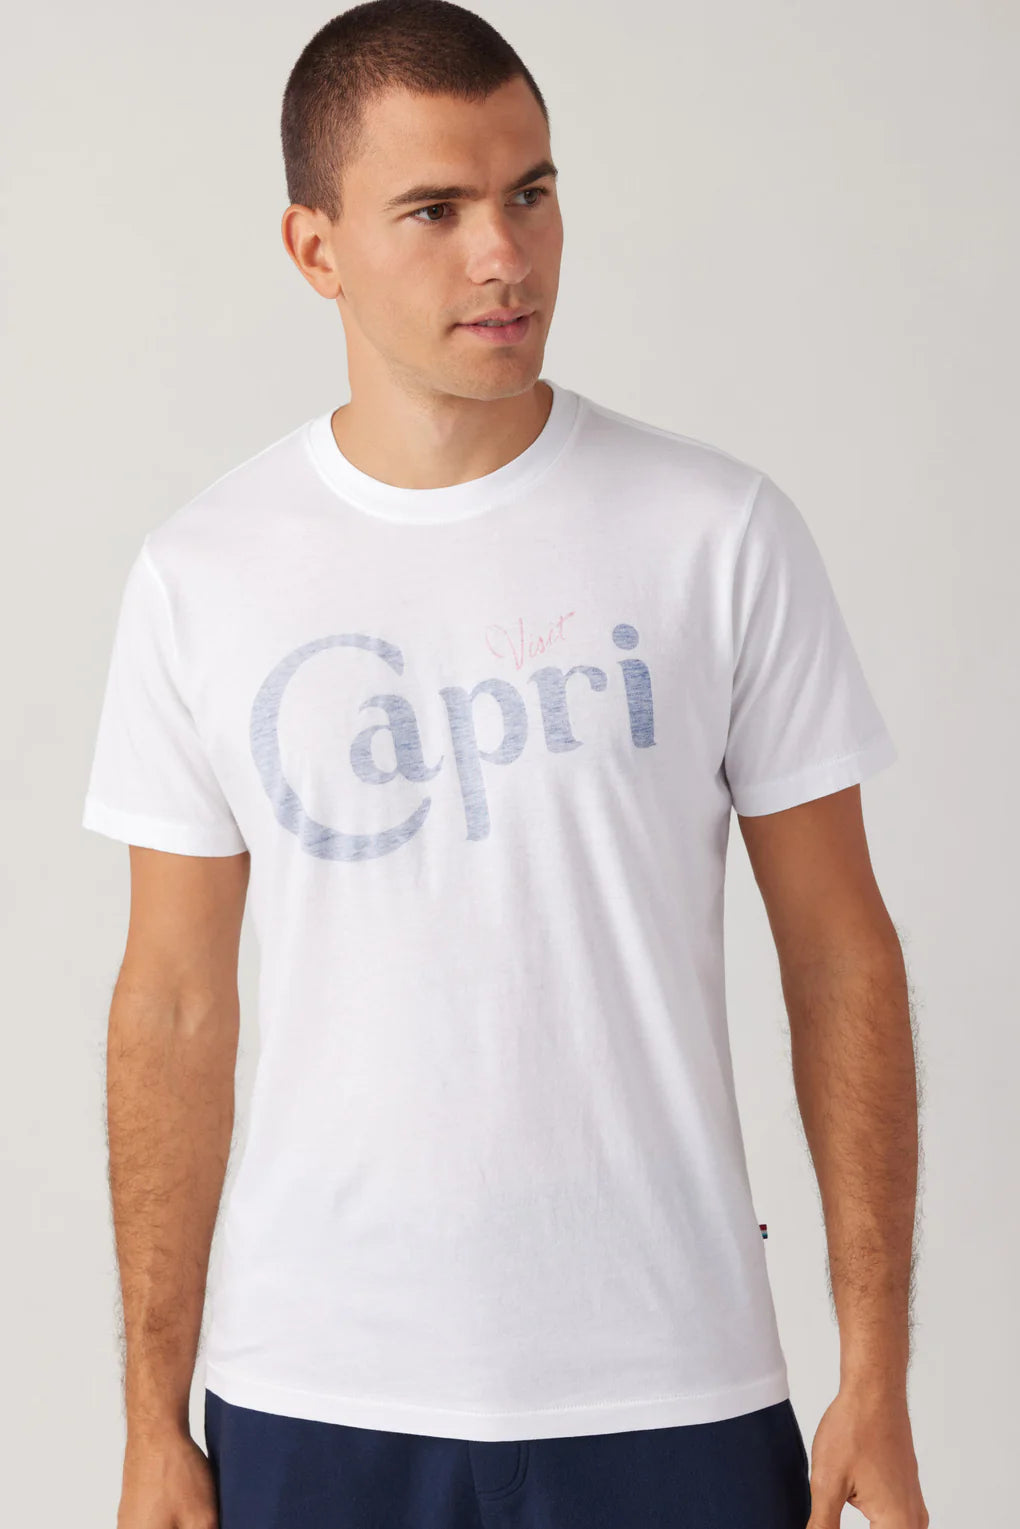 Capri Crew